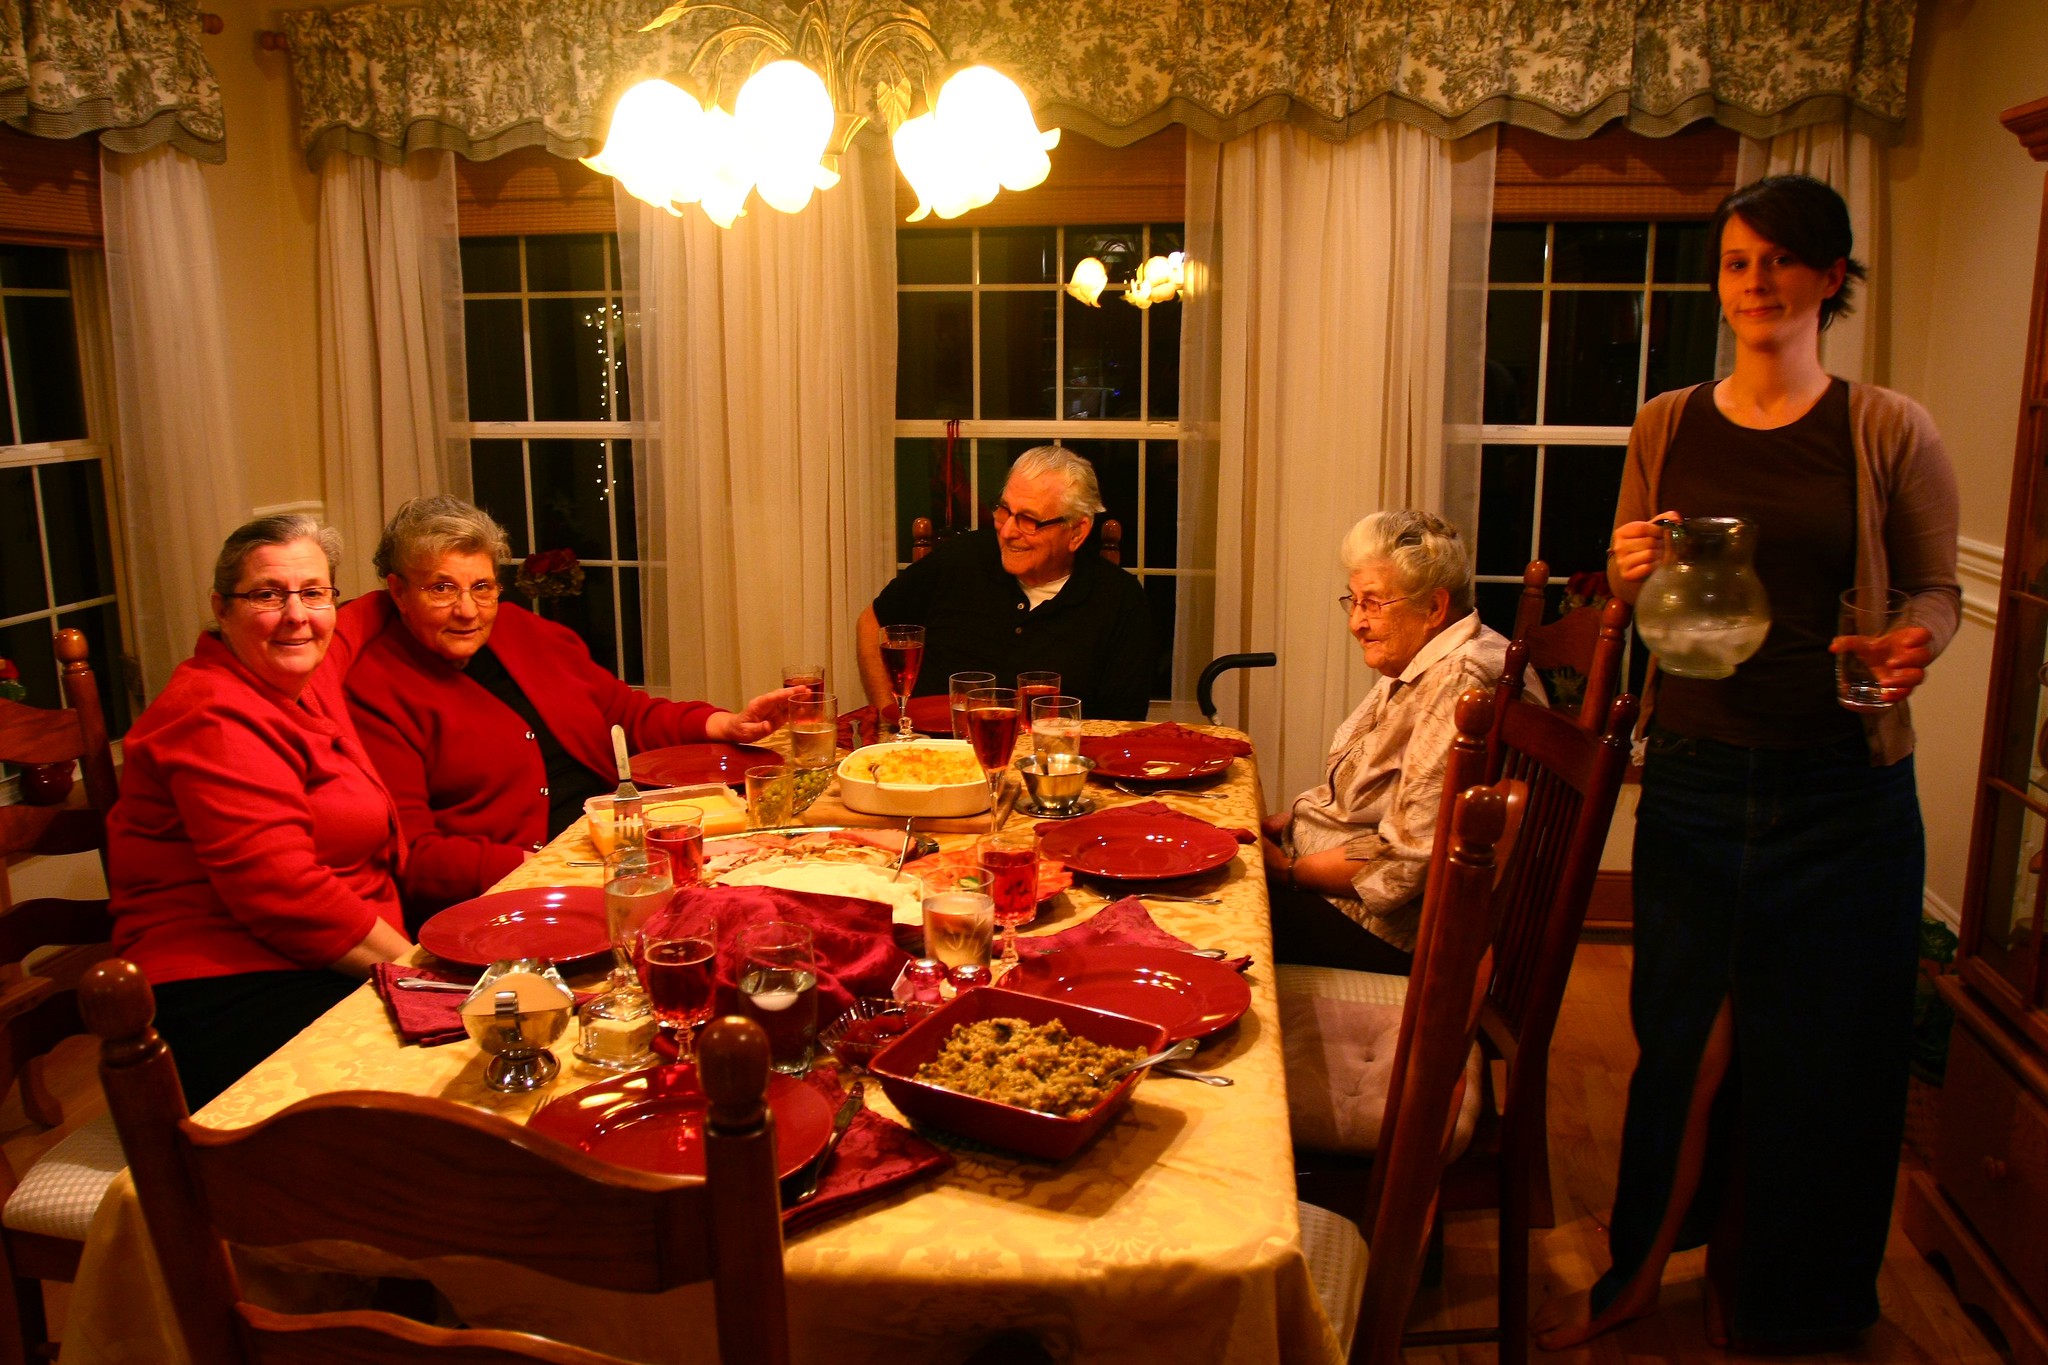 Une femme serveur se tenant près d'une famille réunie pour le repas de Noël | Source : Flickr